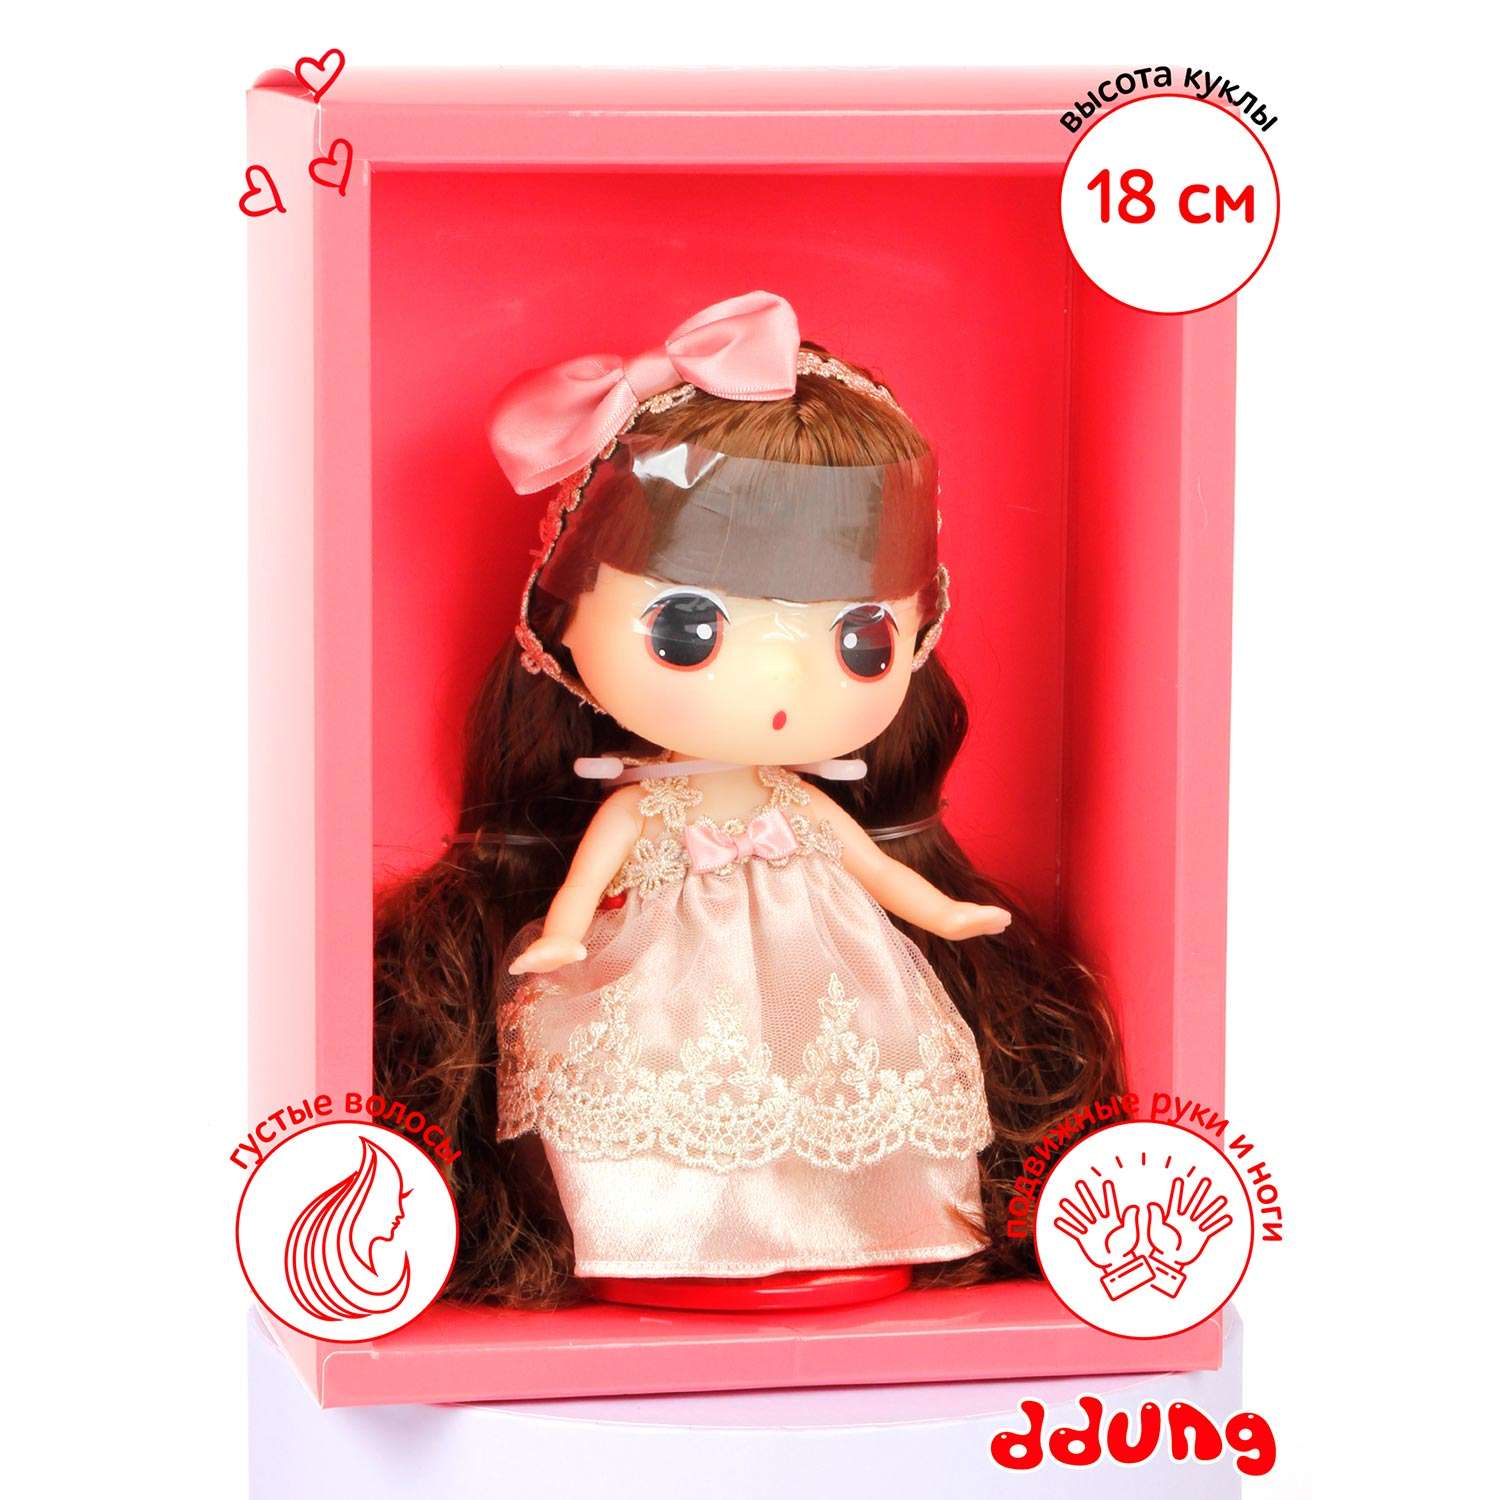 Кукла DDung Принцесса 18 см корейская игрушка аниме FDE1815 - фото 9